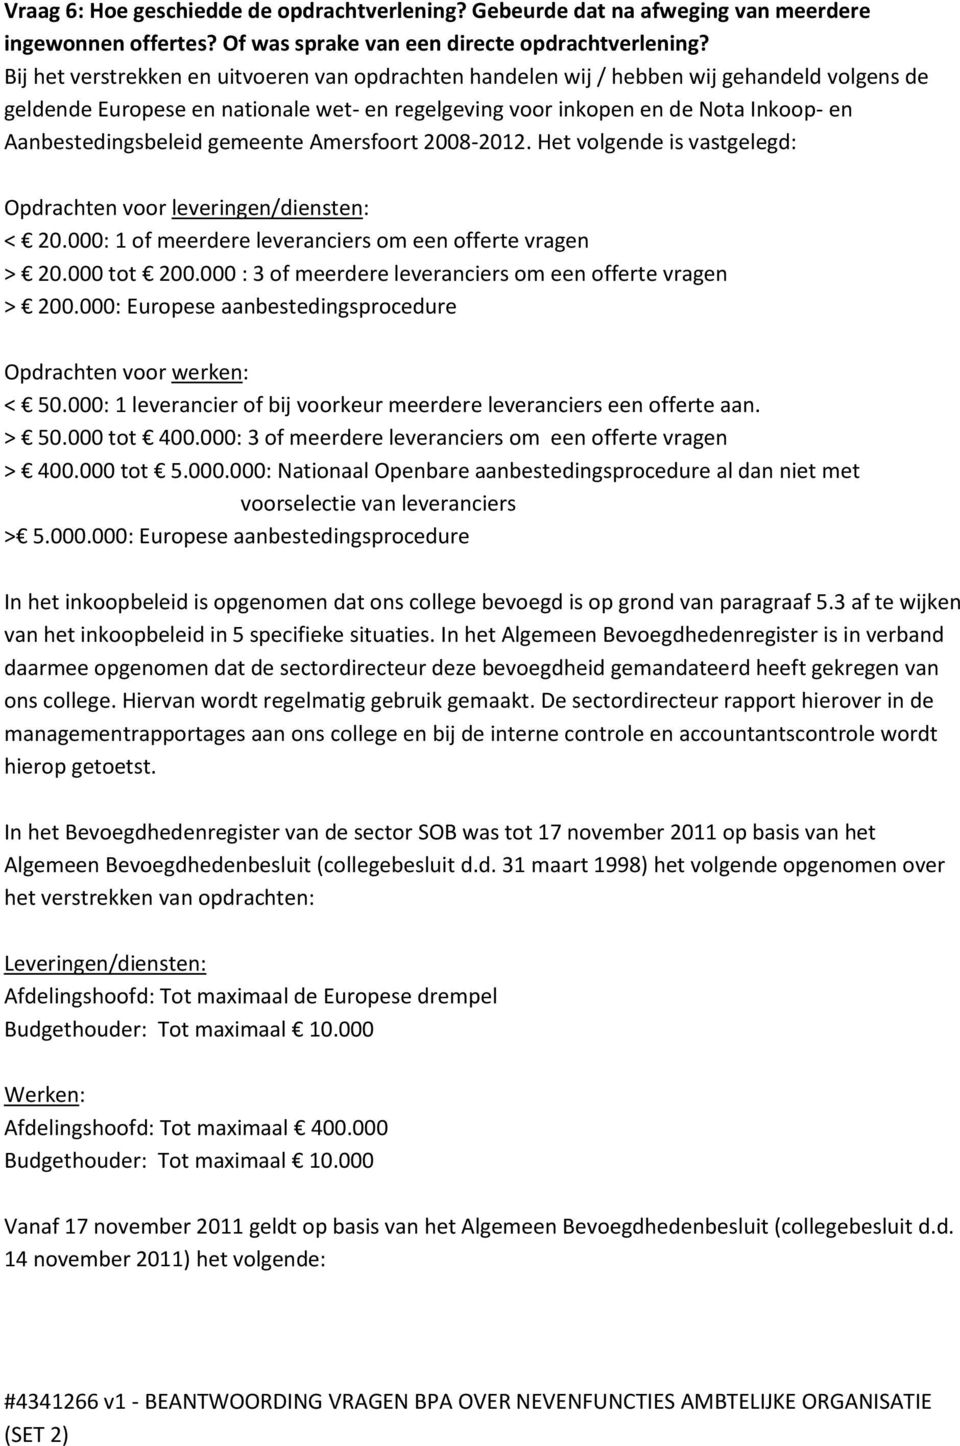 Aanbestedingsbeleid gemeente Amersfoort 2008-2012. Het volgende is vastgelegd: Opdrachten voor leveringen/diensten: < 20.000: 1 of meerdere leveranciers om een offerte vragen > 20.000 tot 200.